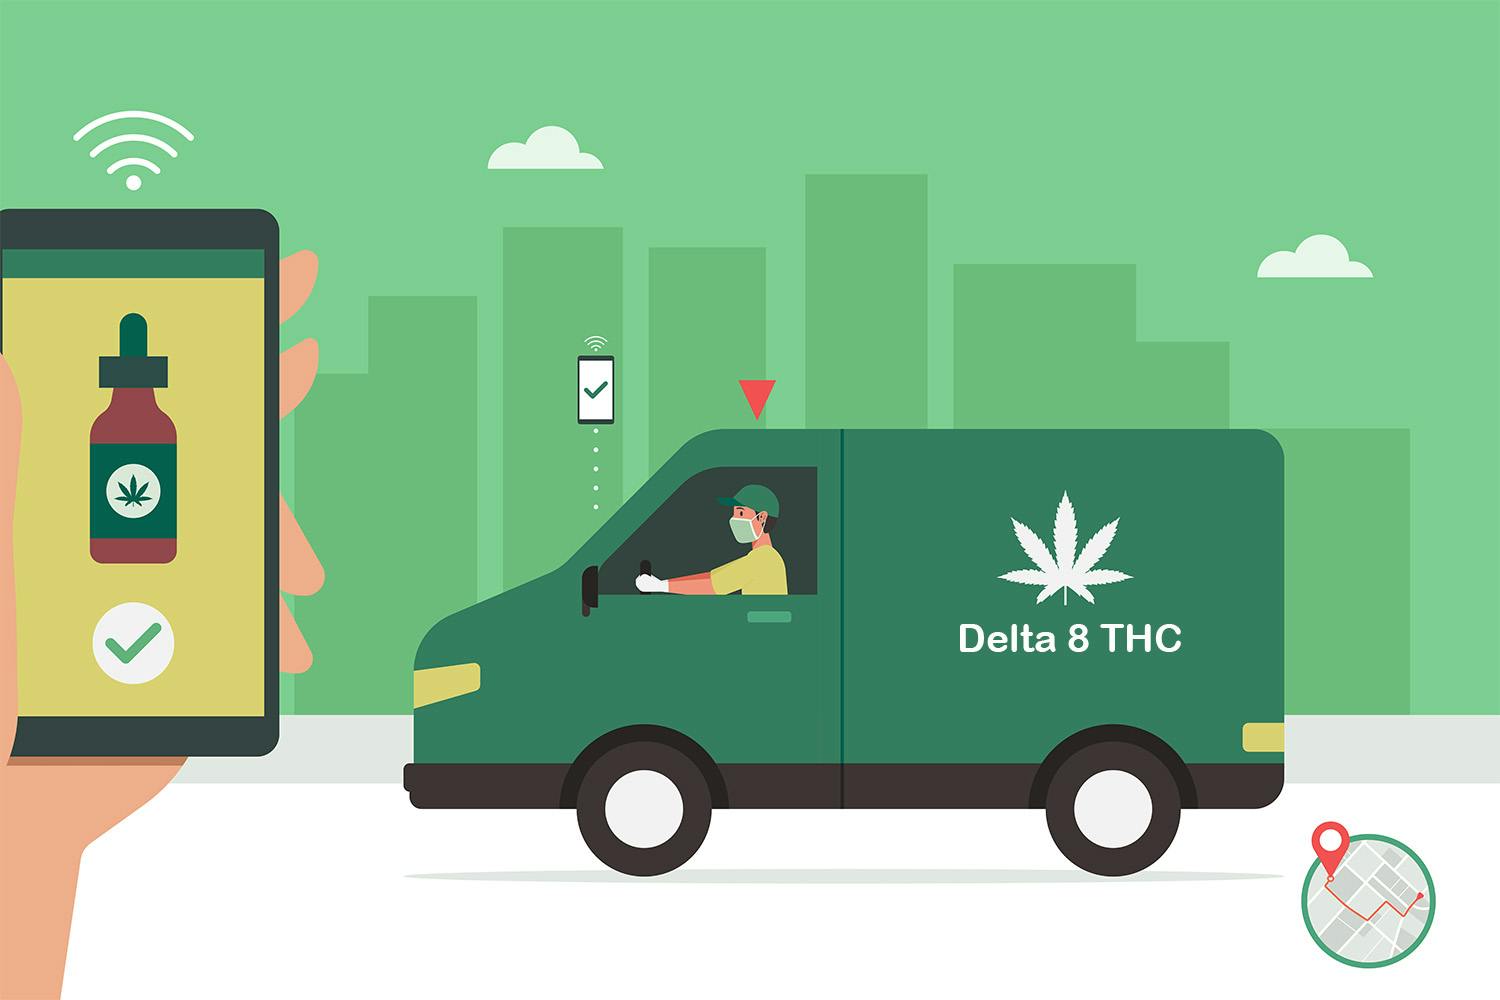 Delta 8 THC being delivered in car illustration